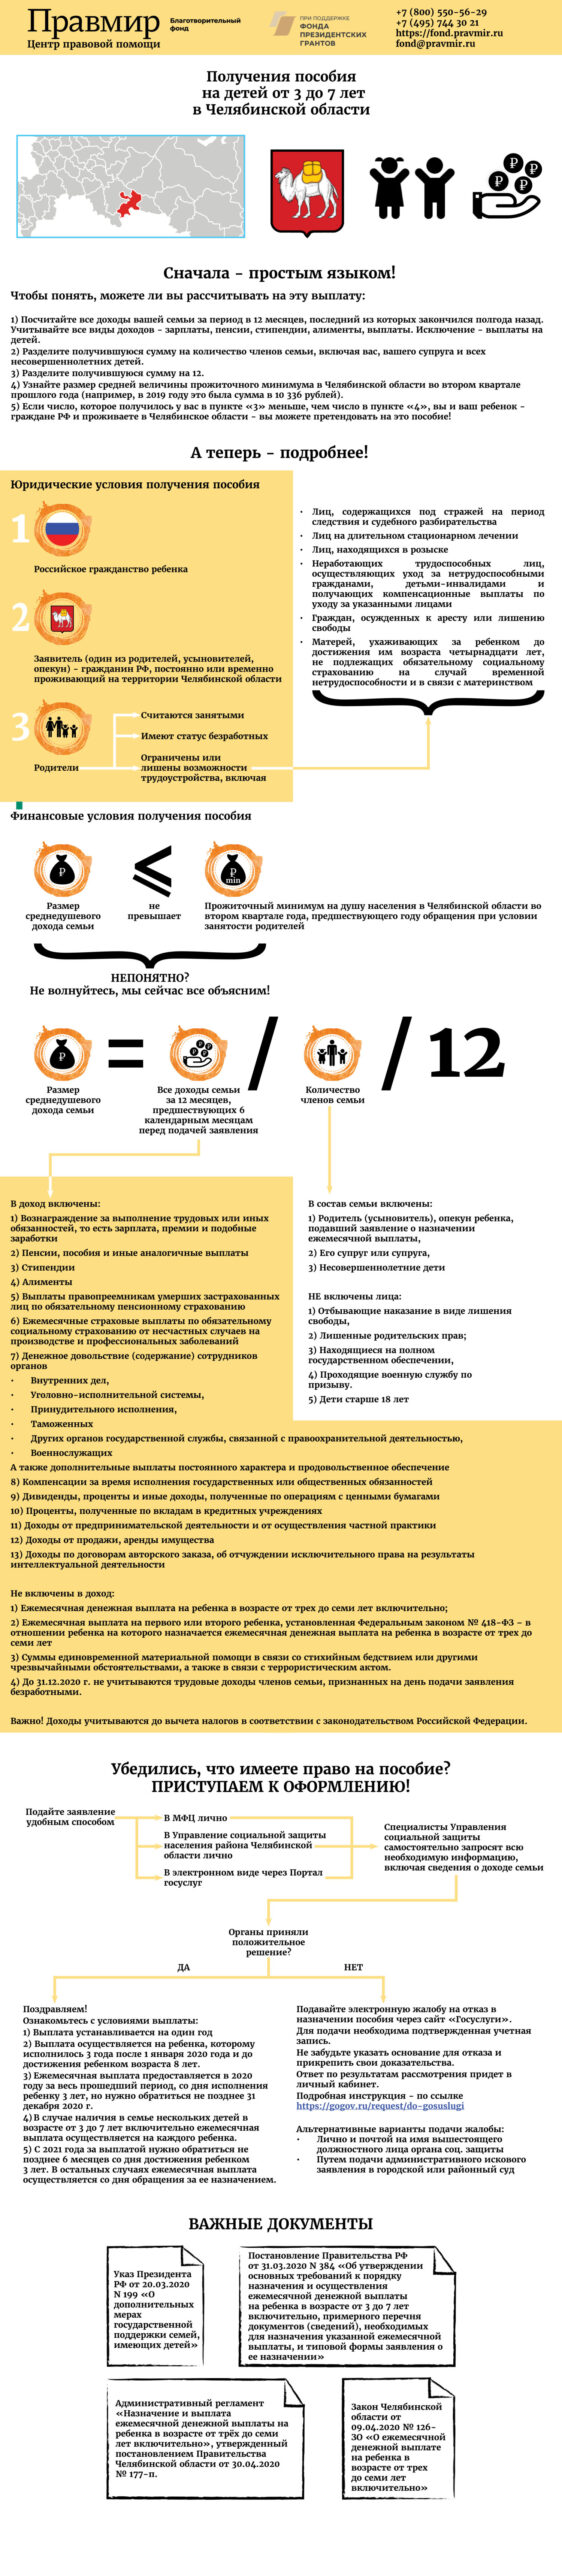 Как получить пособие на детей от 3 до 7 лет в Челябинской области